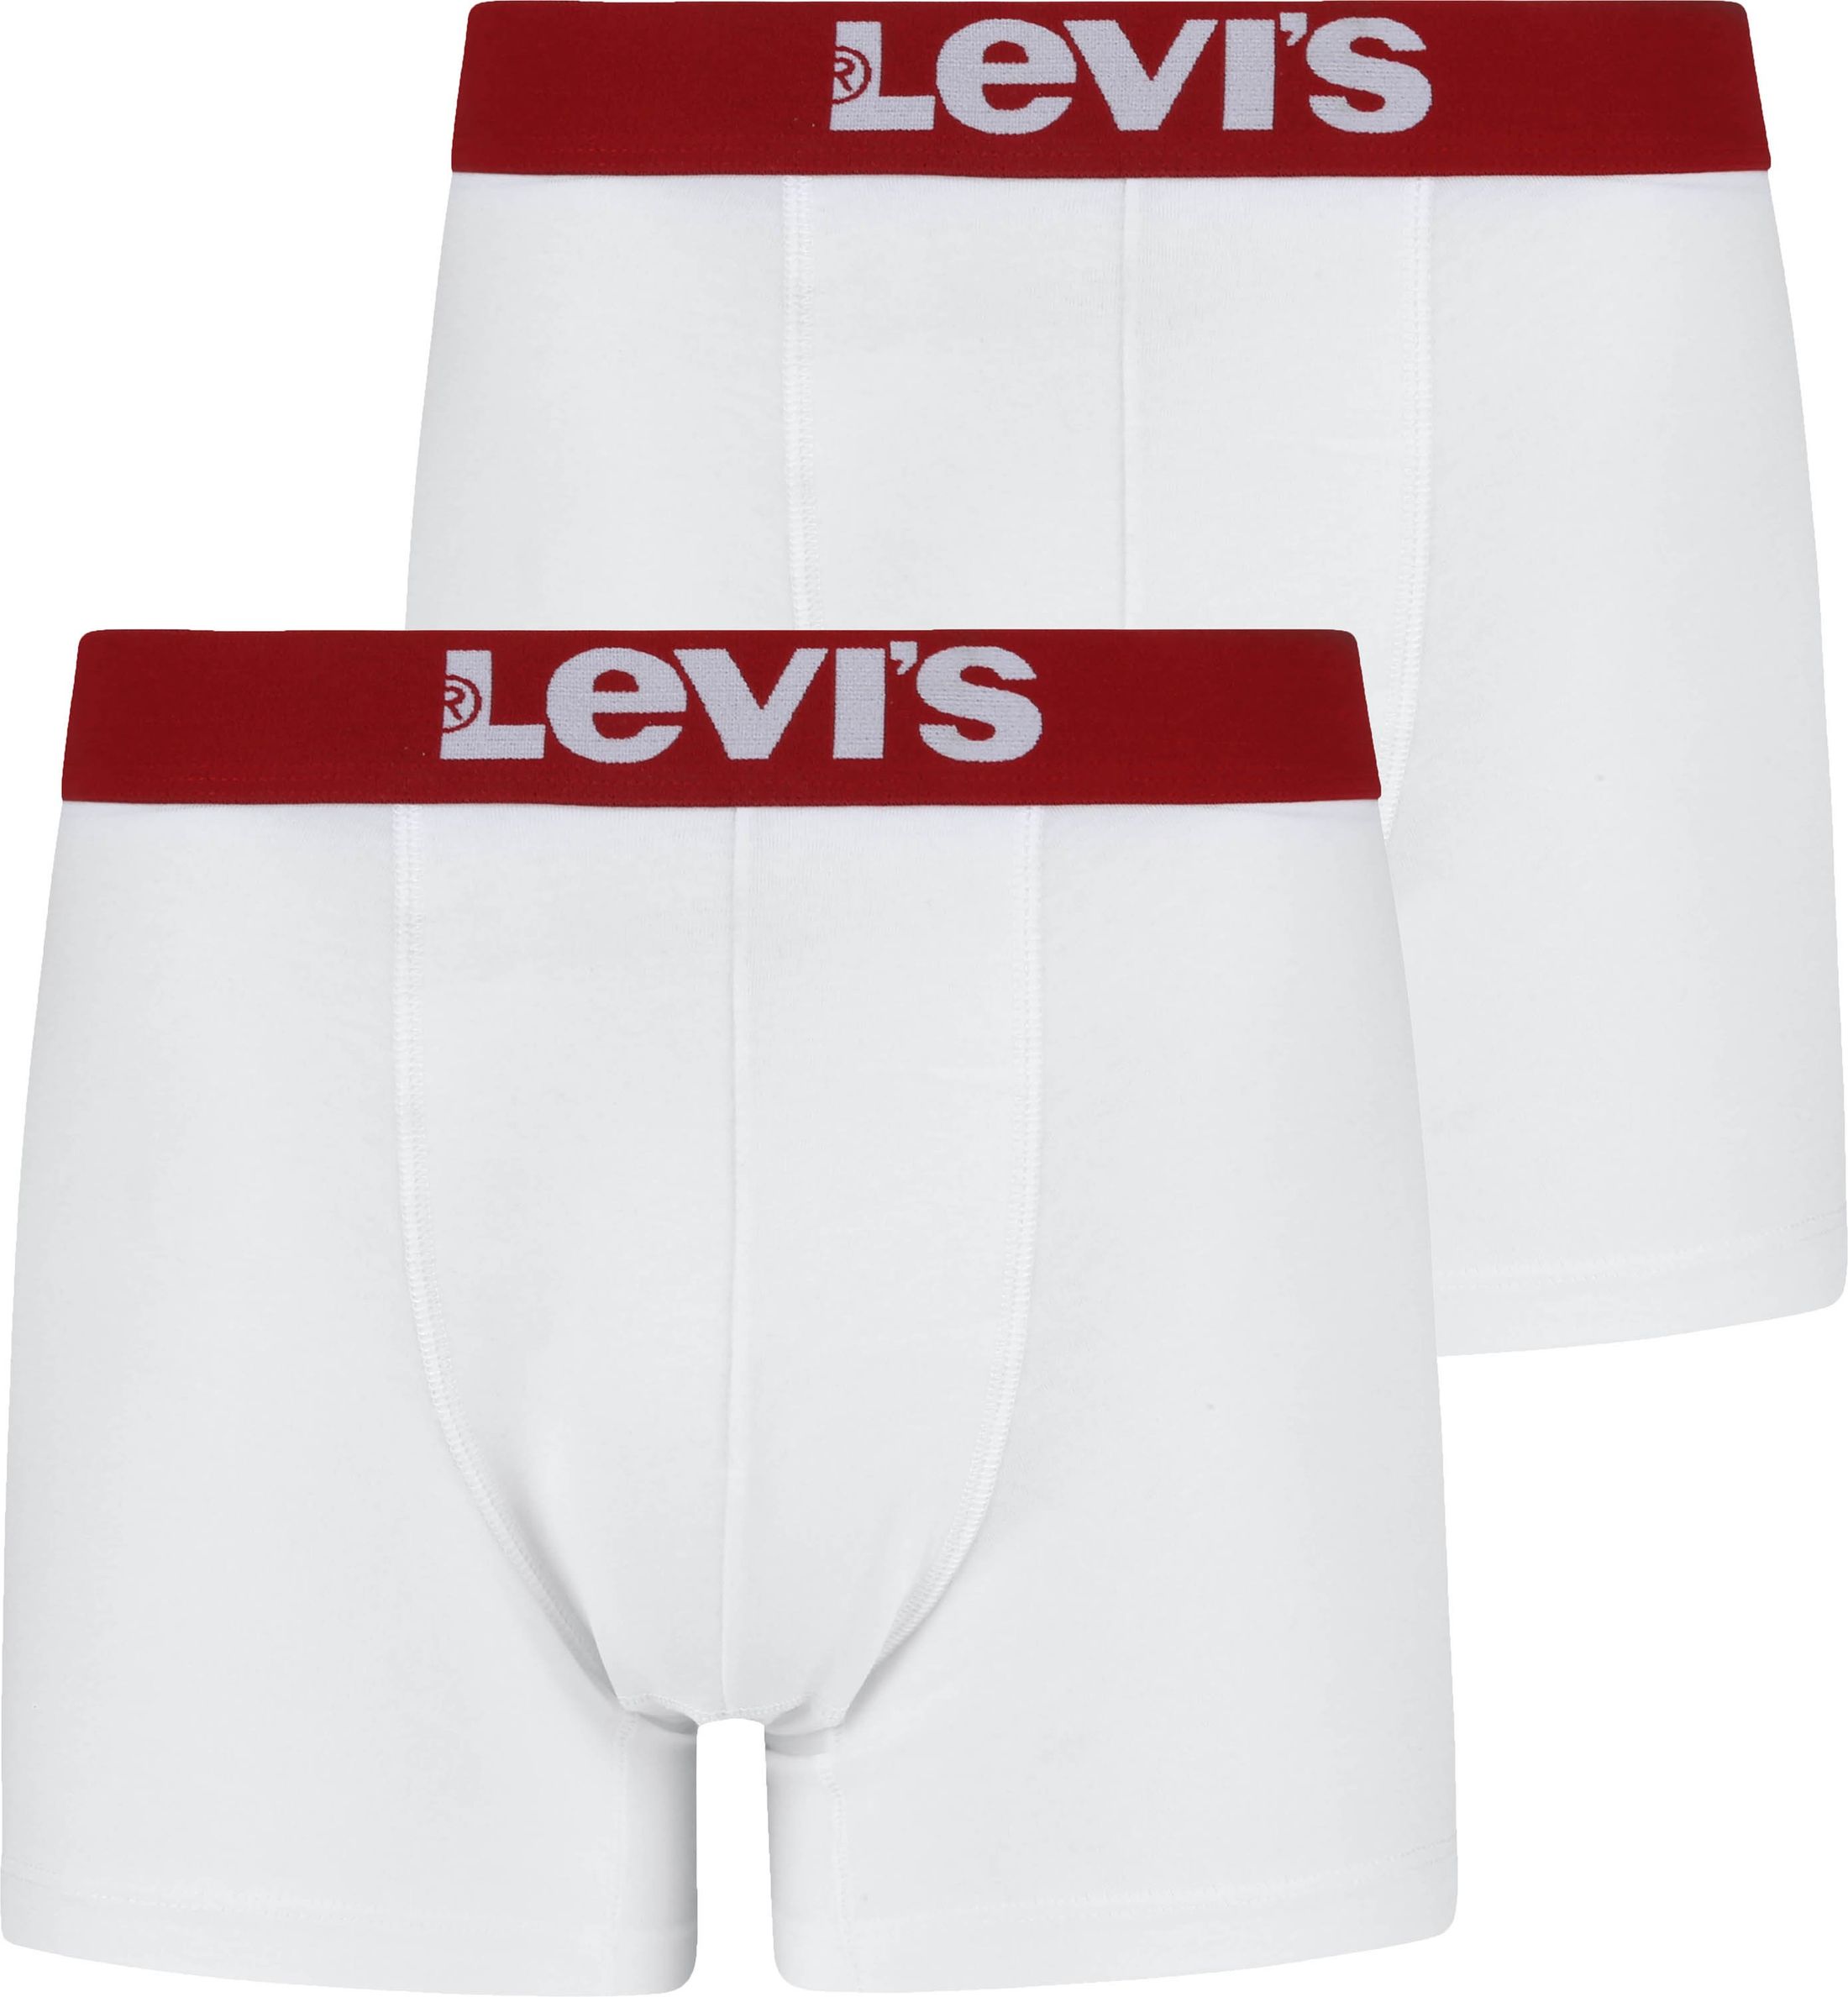 Levi's Boxer Shorts 2-Pack White size L